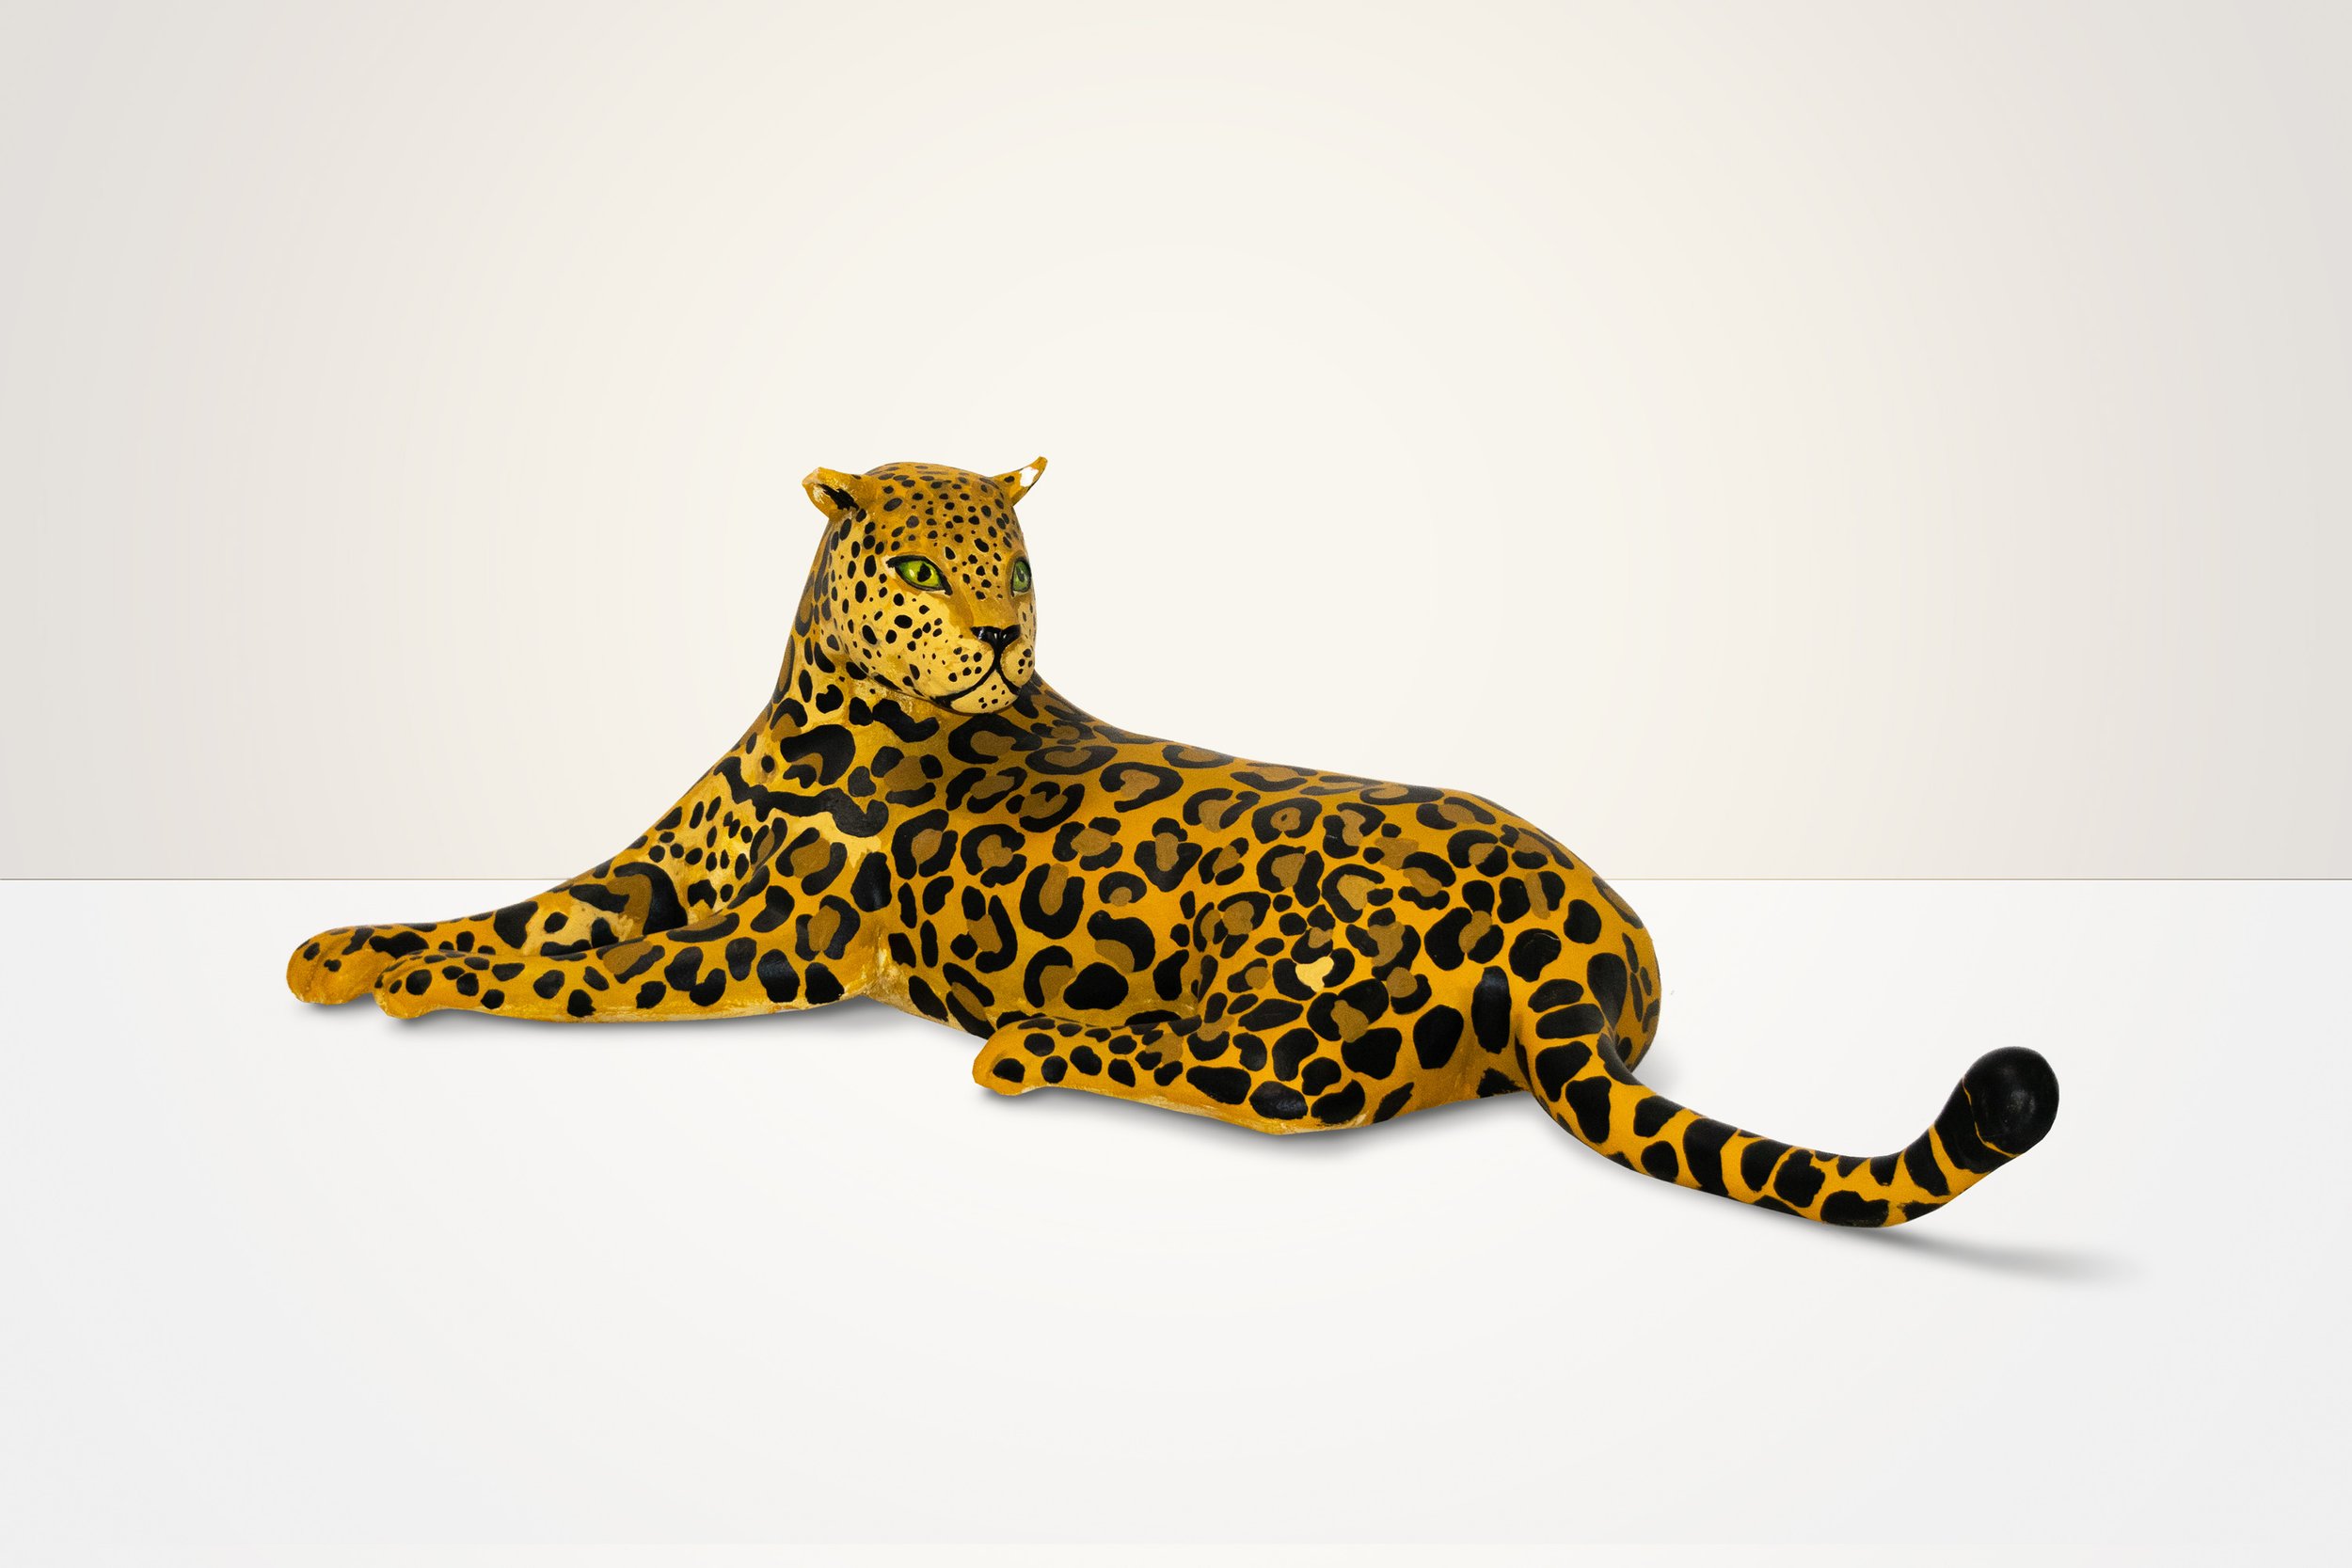 The 3D Jaguar